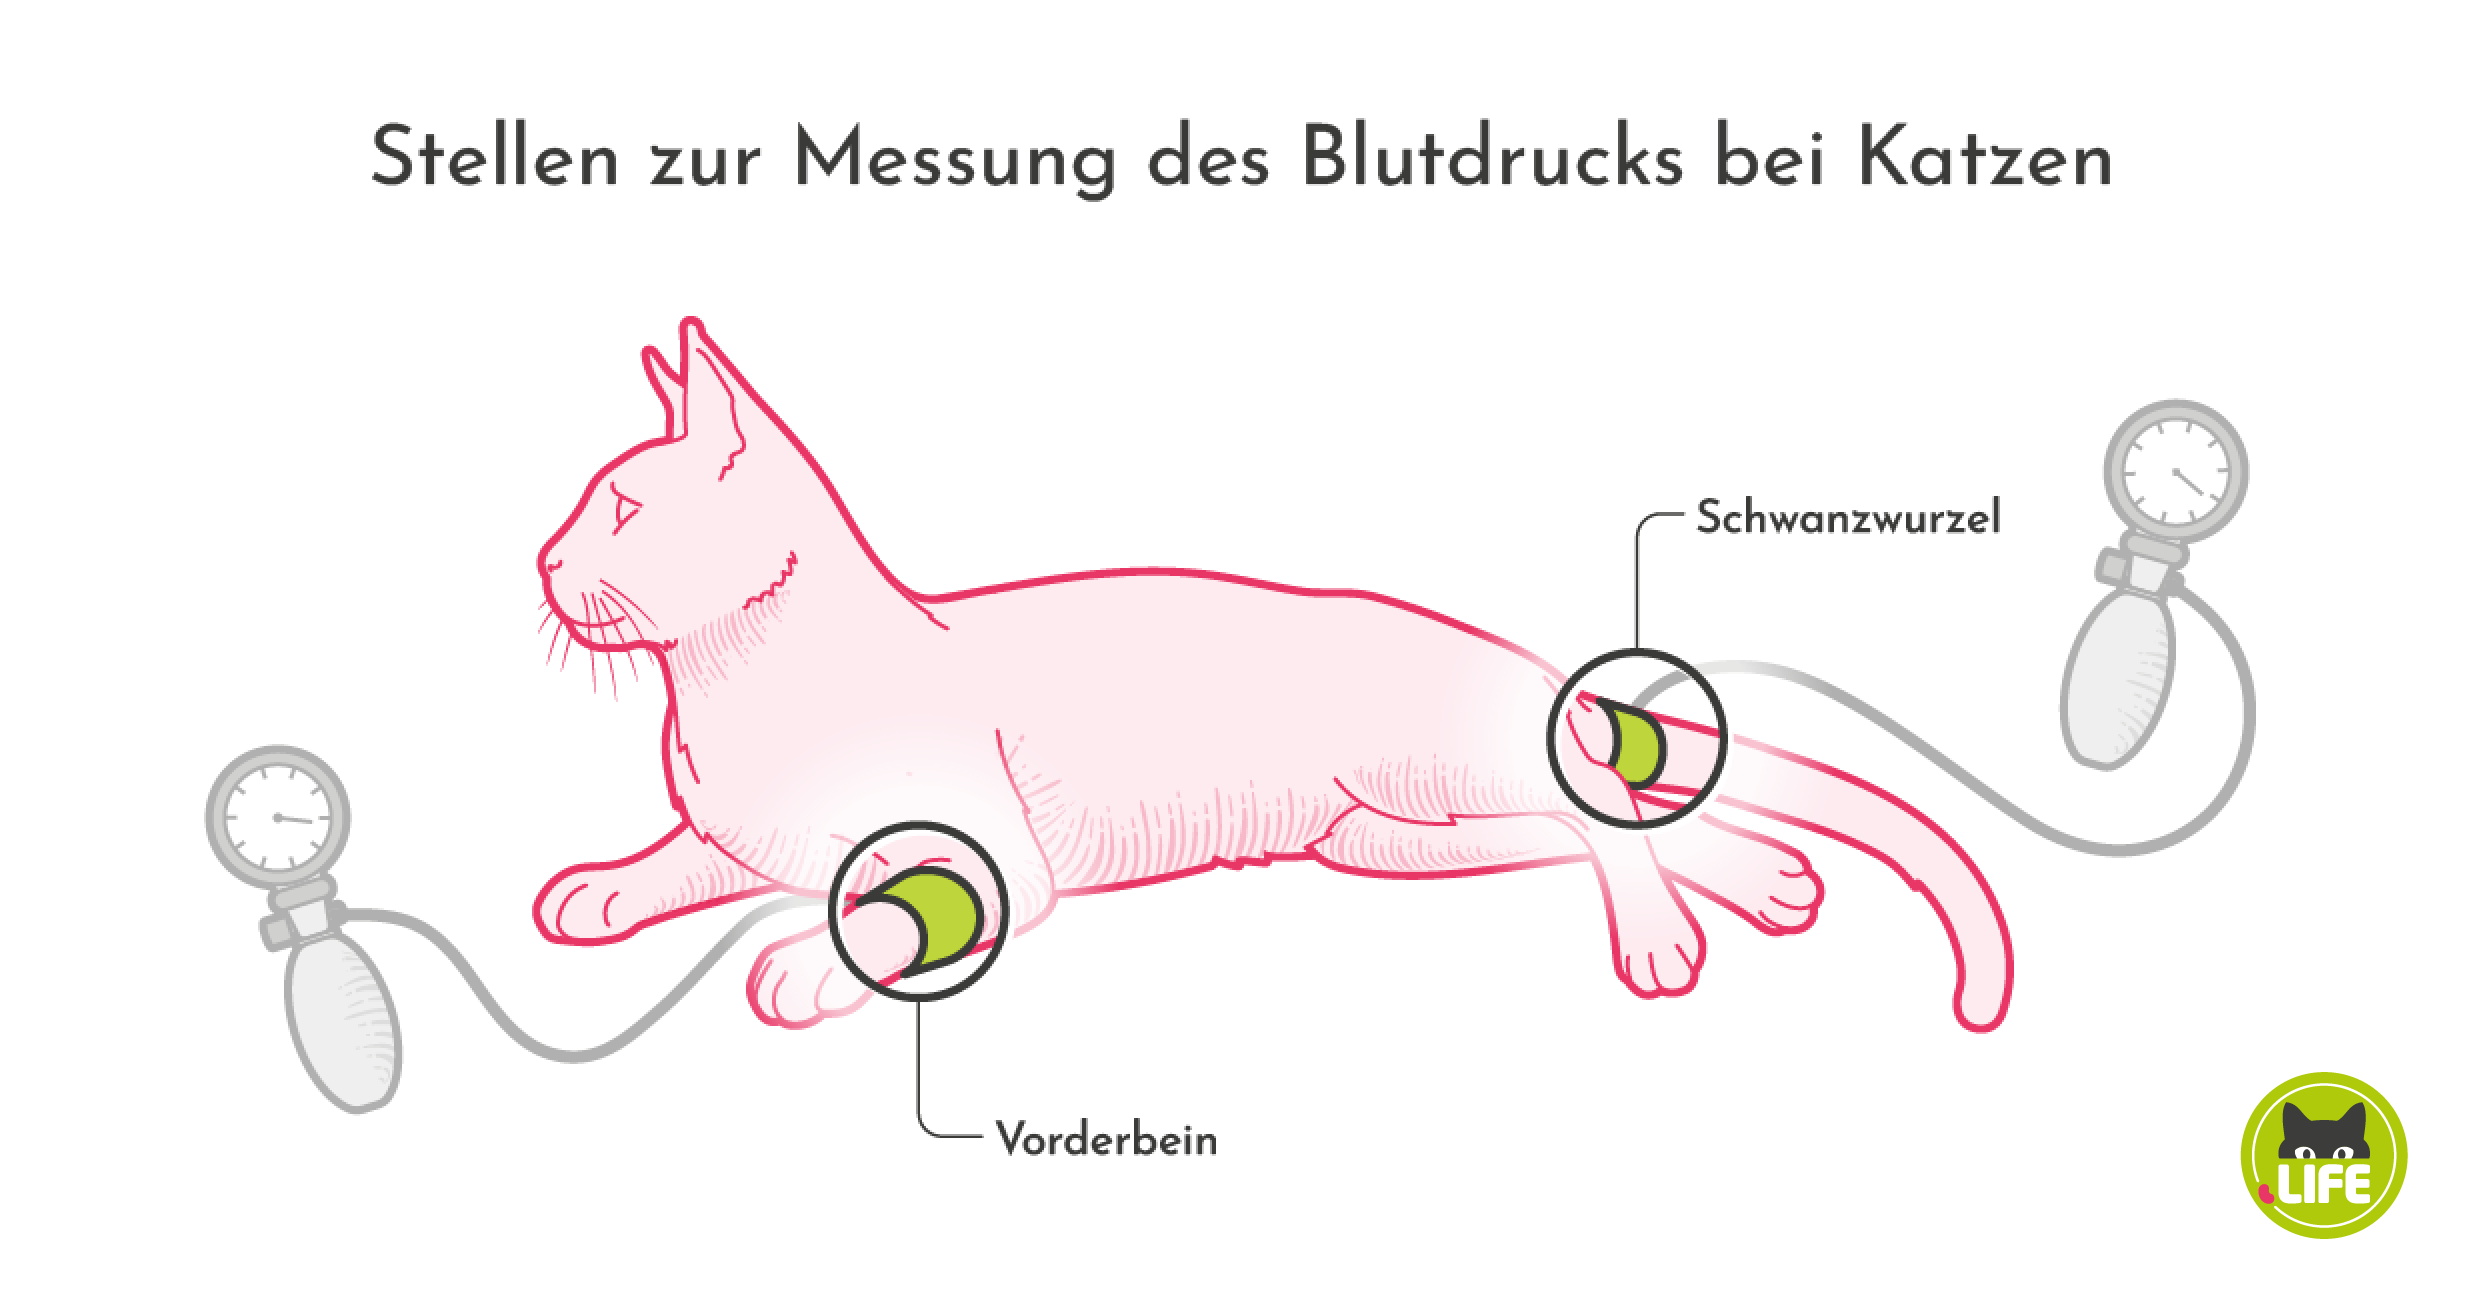 Stellen zur Messung des Blutdrucks bei Katzen.